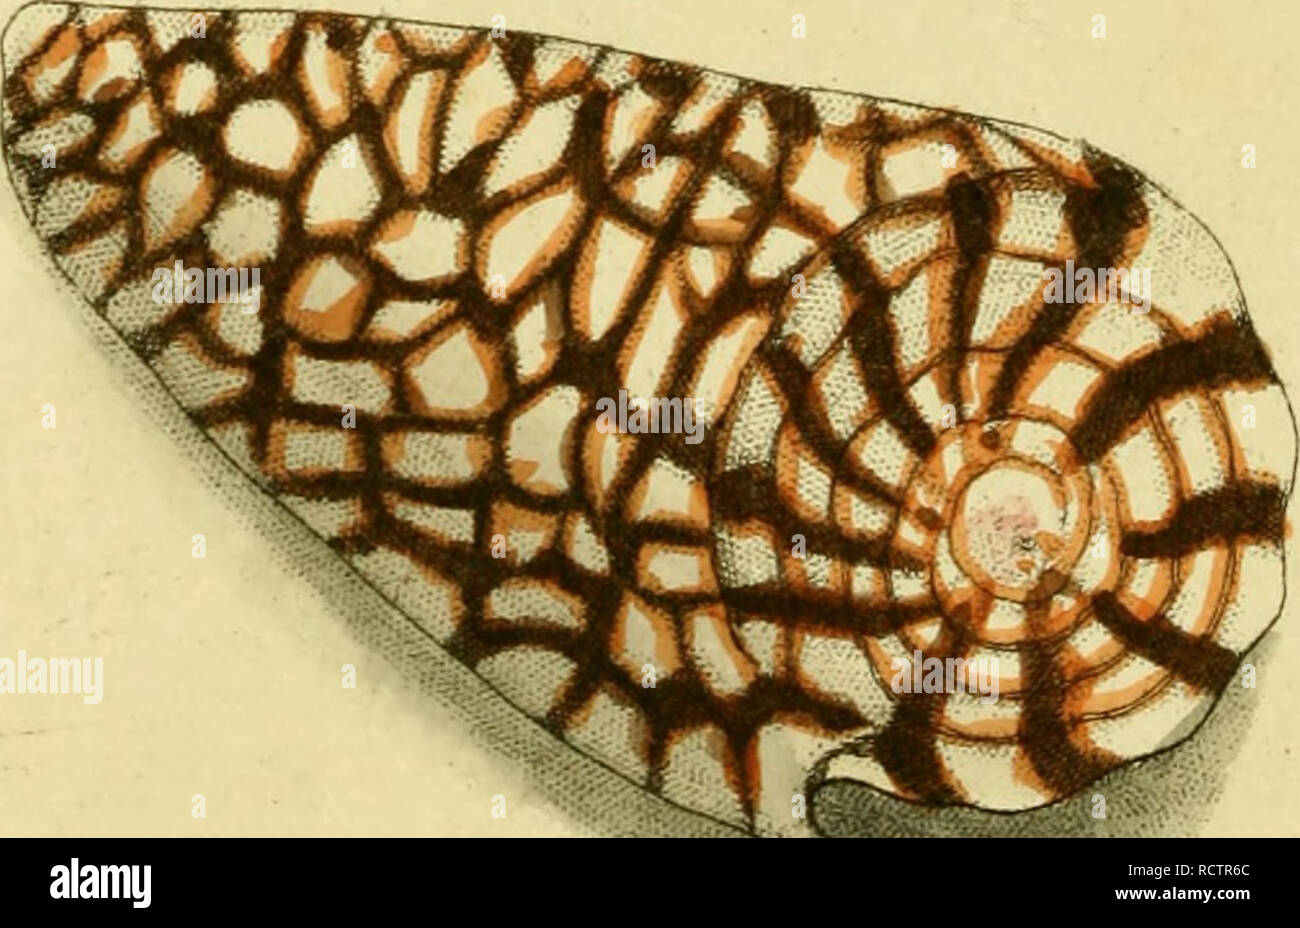 . [Descrizioni e illustrazioni di molluschi : estratte da del naturalista miscellanea. Molluschi; molluschi. '?.R -^Zmt-c^irtt, .-^^L/'lijAa^ jftiru li'iyai.tu.'-^ulAMi^ i^,AC/S.i/intfrr^lircc^.. Si prega di notare che queste immagini vengono estratte dalla pagina sottoposta a scansione di immagini che possono essere state migliorate digitalmente per la leggibilità - Colorazione e aspetto di queste illustrazioni potrebbero non perfettamente assomigliano al lavoro originale. Shaw, George, 1751-1813; Nodder, Frederick Polydore, editore; Nodder, Elizabeth, editore; dallâ, William Healey, 1845-1927, ex proprietario. DSI; Anthony, C. , ex proprietario. DSI; N Foto Stock